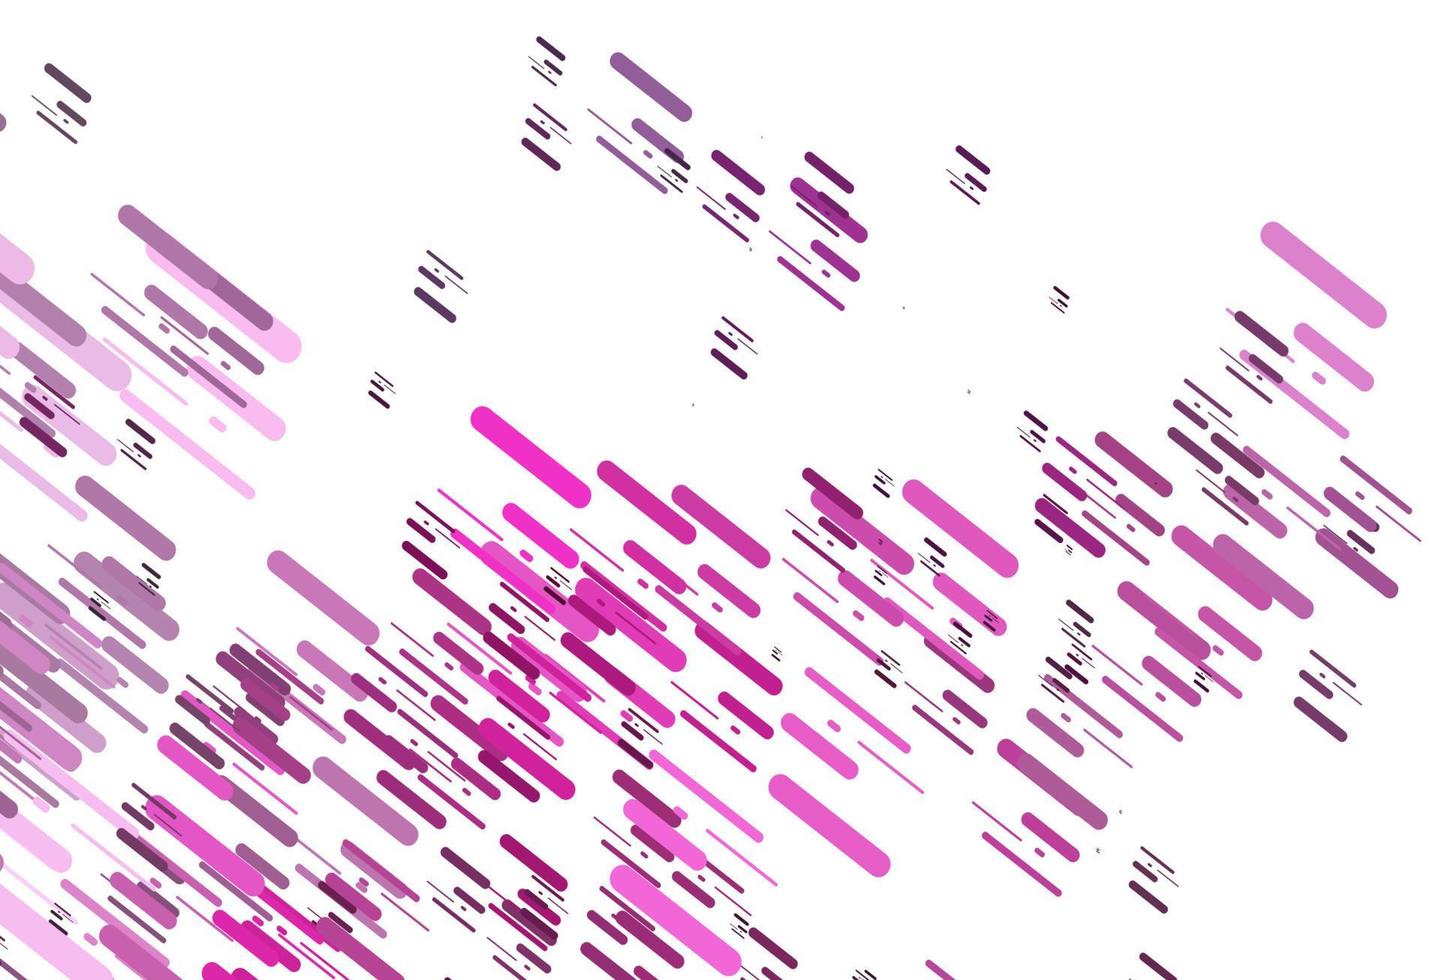 padrão de vetor rosa claro com linhas estreitas.